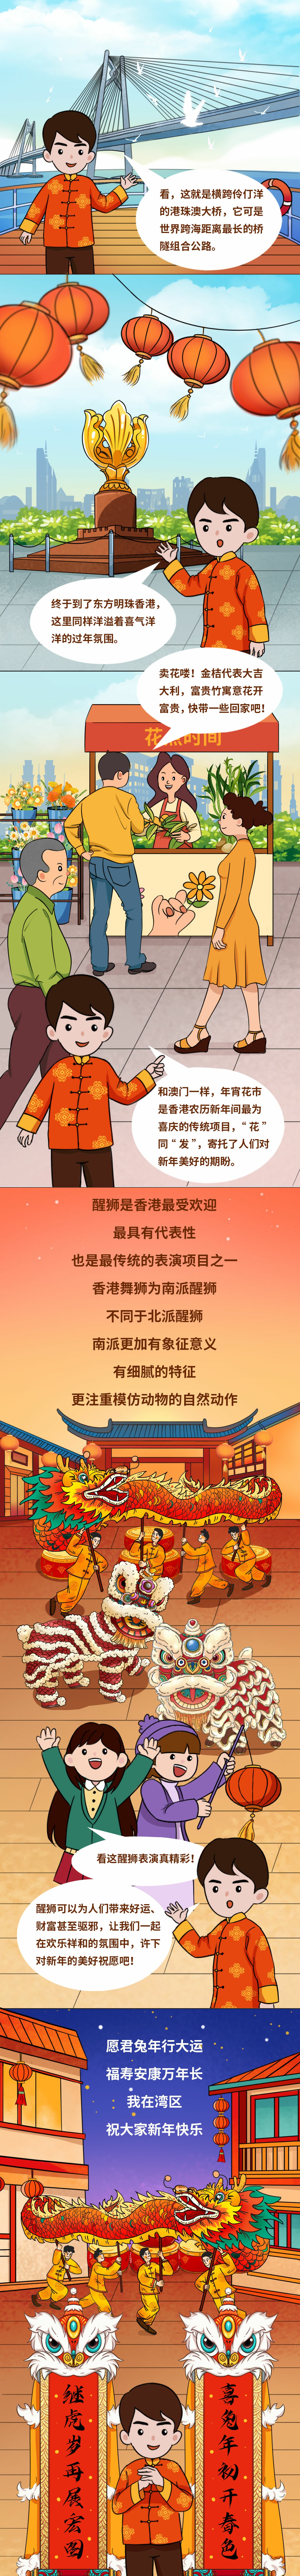 【网罗中国节】长图丨小明的春节纪行，带你感受湾别离样年味